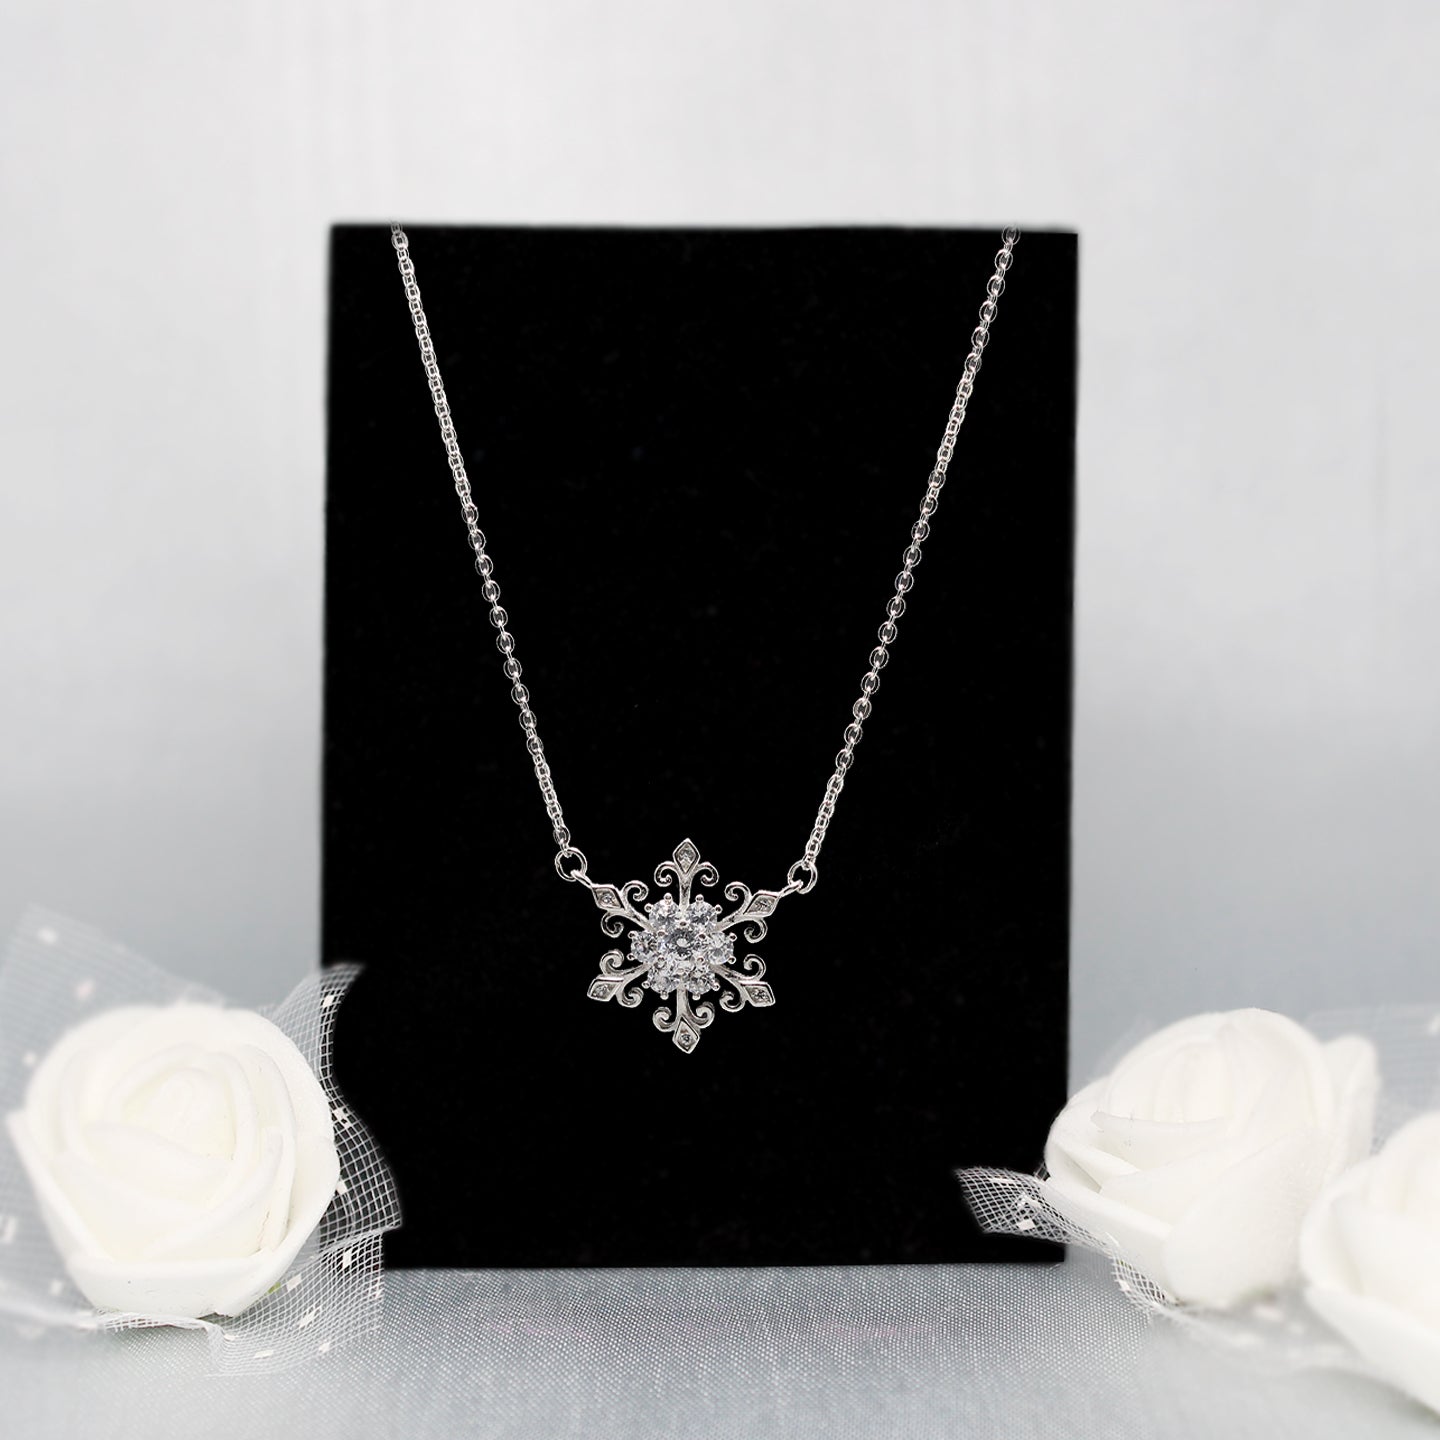 Stauer Snowflake Necklace | Snowflake necklace, Shop necklaces, Pendant